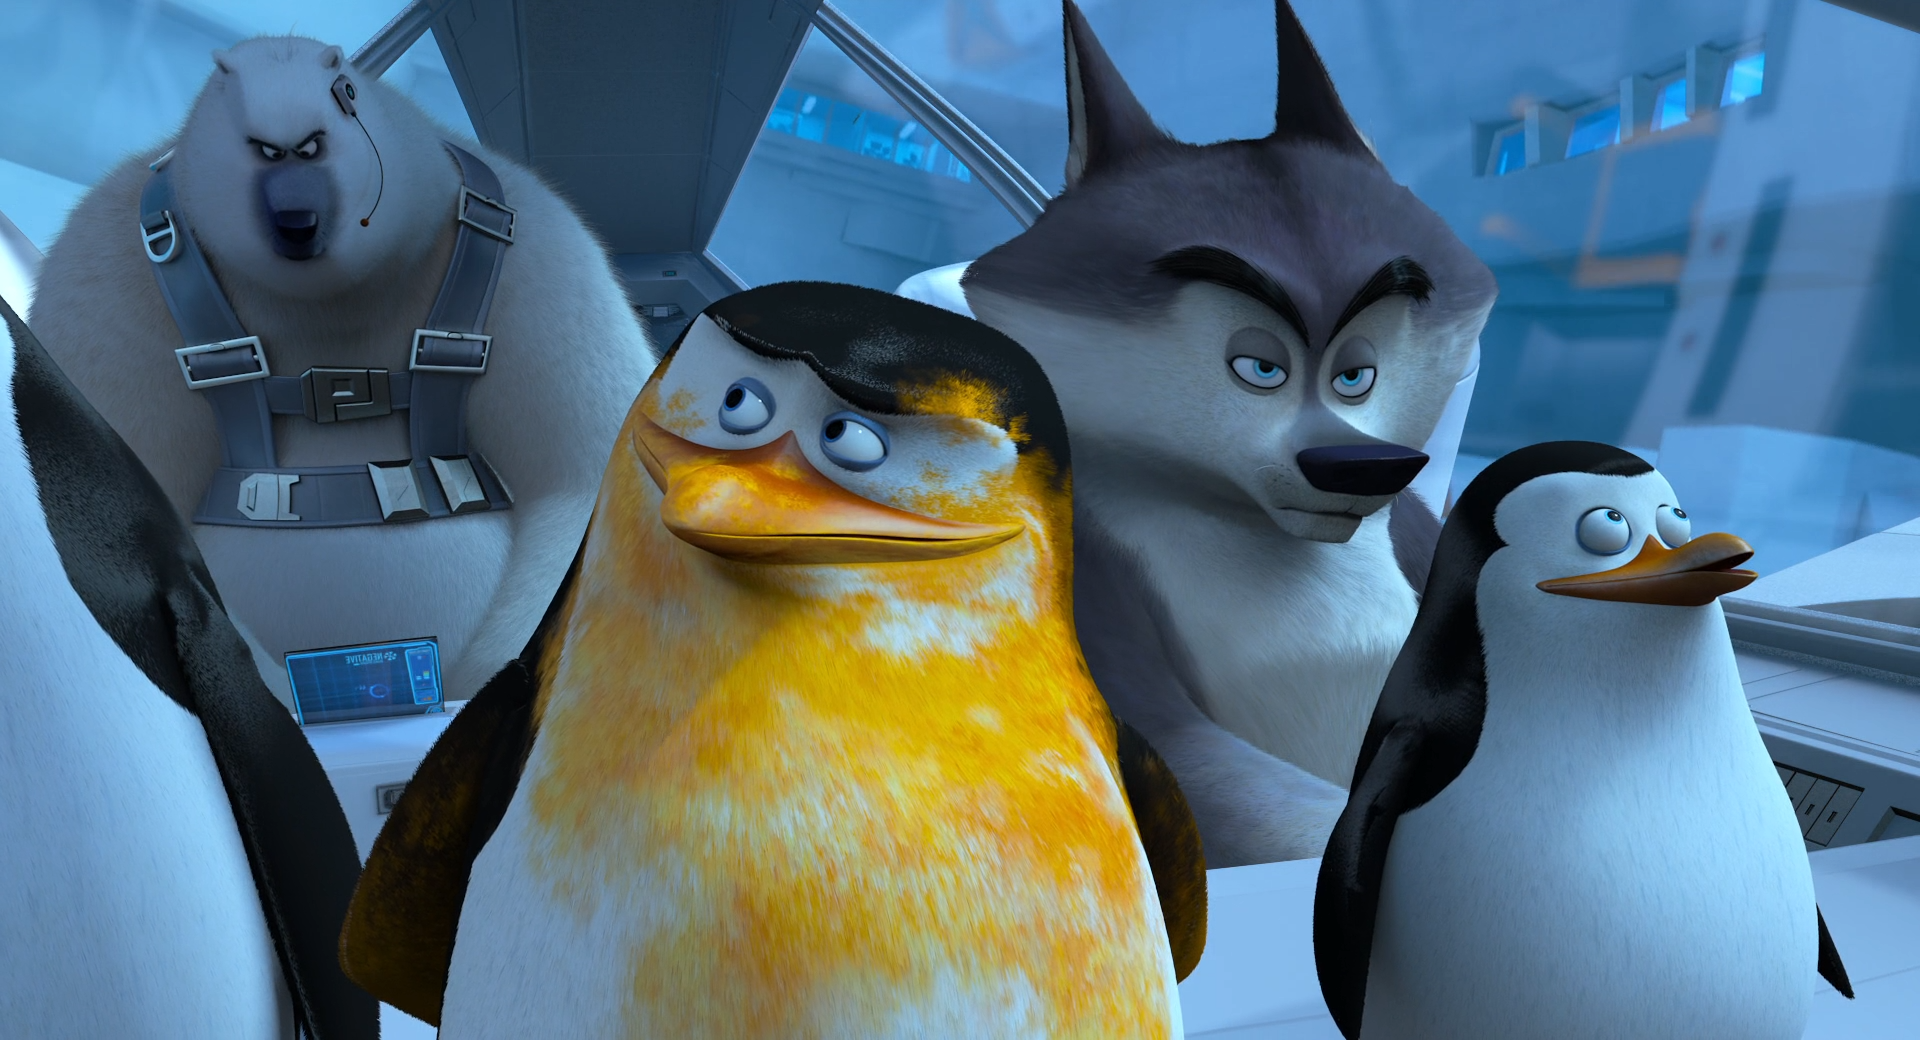 Пингвины из Мадагаскара 2014. Пингивины из Мадагаскар. Penguins of Madagascar пингвины Мадагаскара 2014. Включи песню пингвины